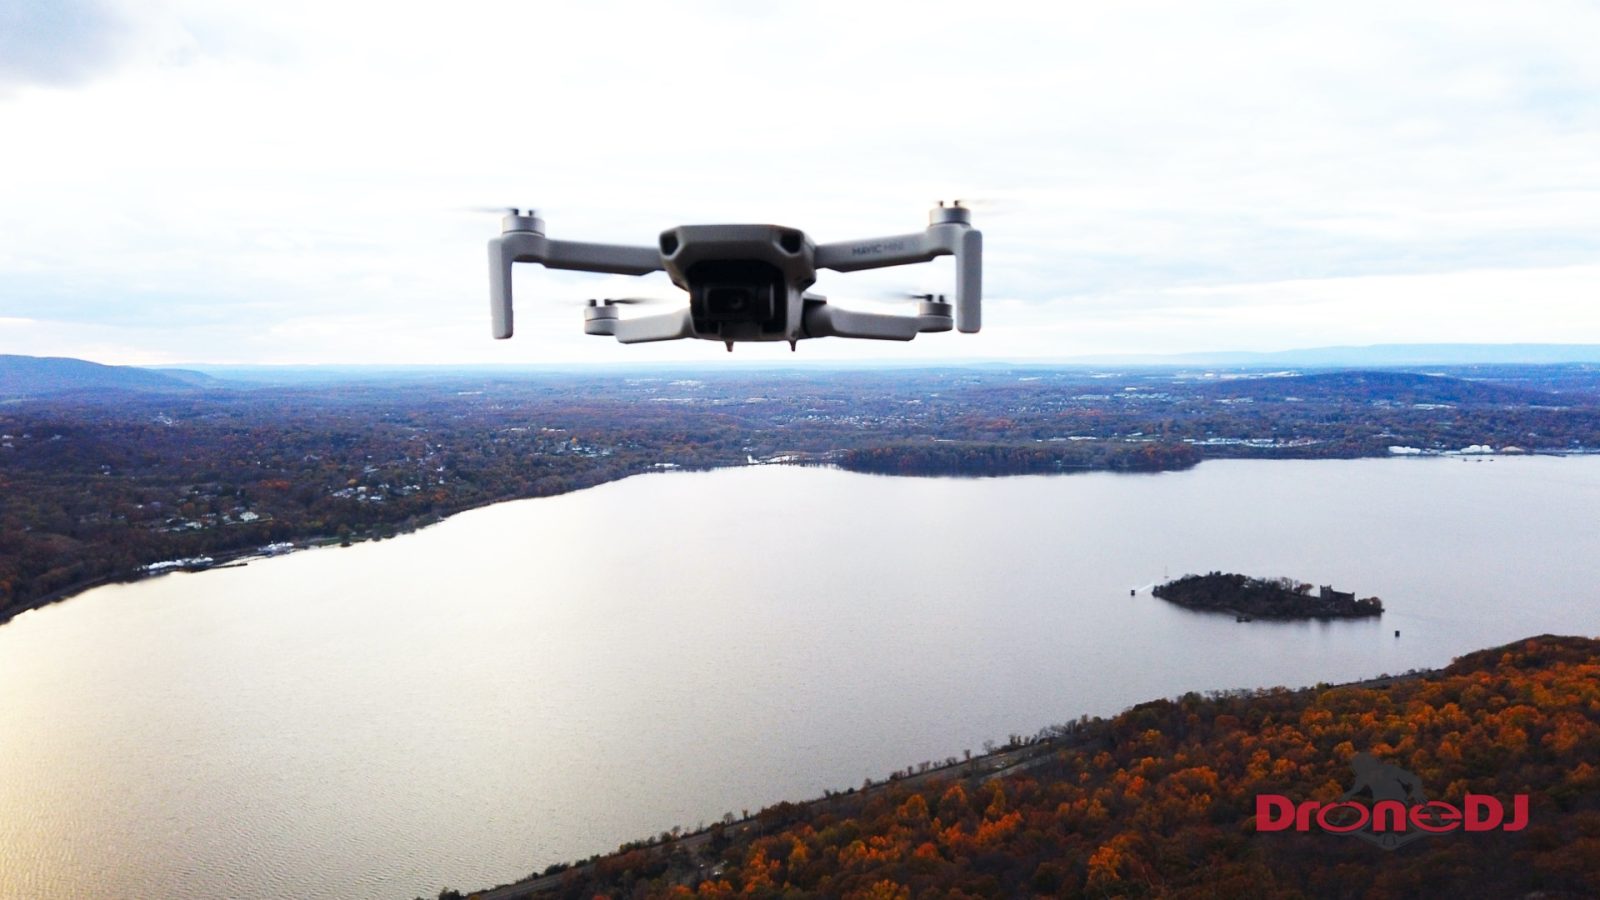 DJI Mavic Mini long-distance range Mini-drone reaches 2.4 miles!